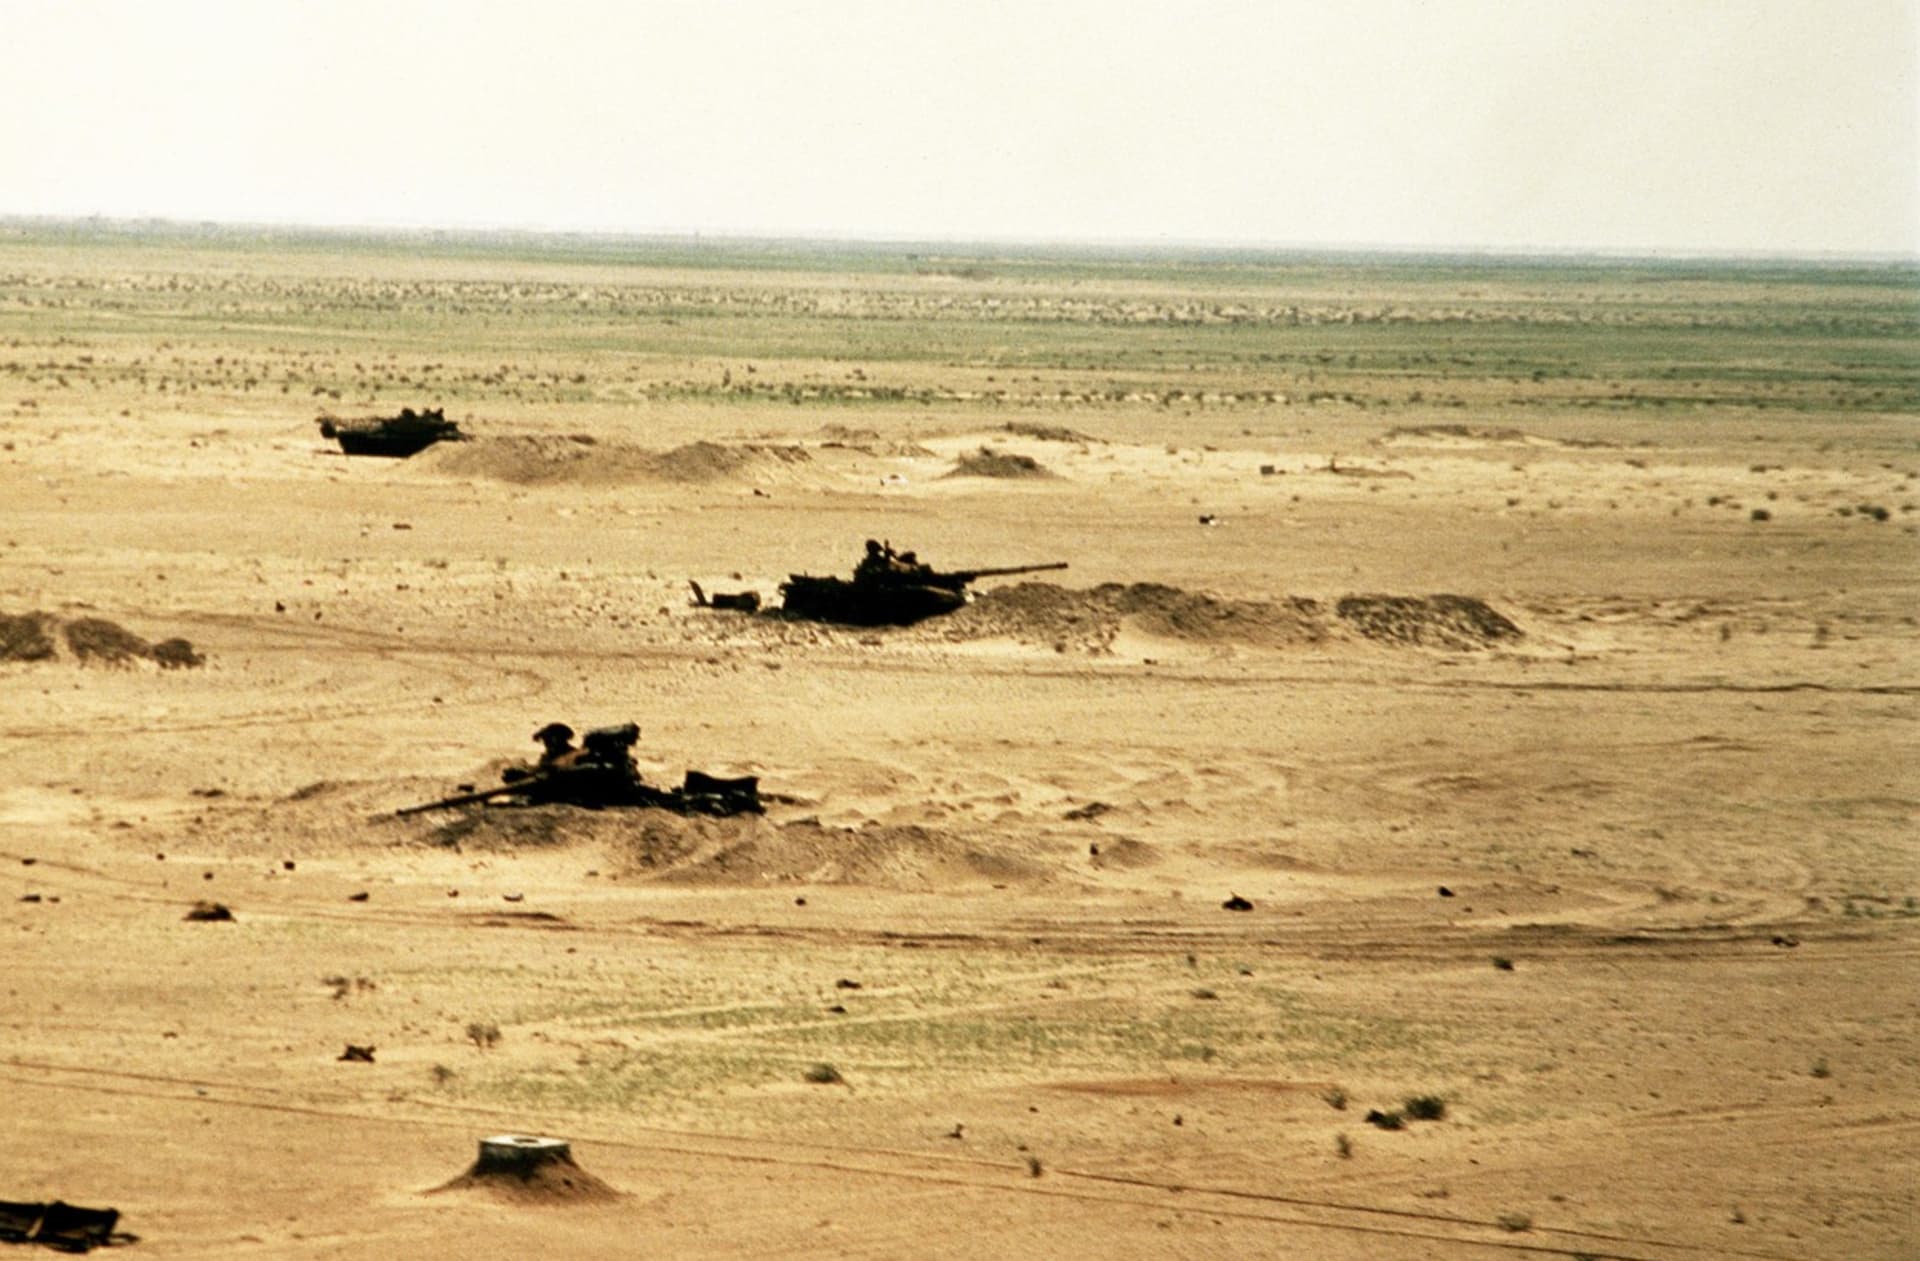 Skupina zakopaných a zničených iráckých T-72 (snímek z roku 1991)